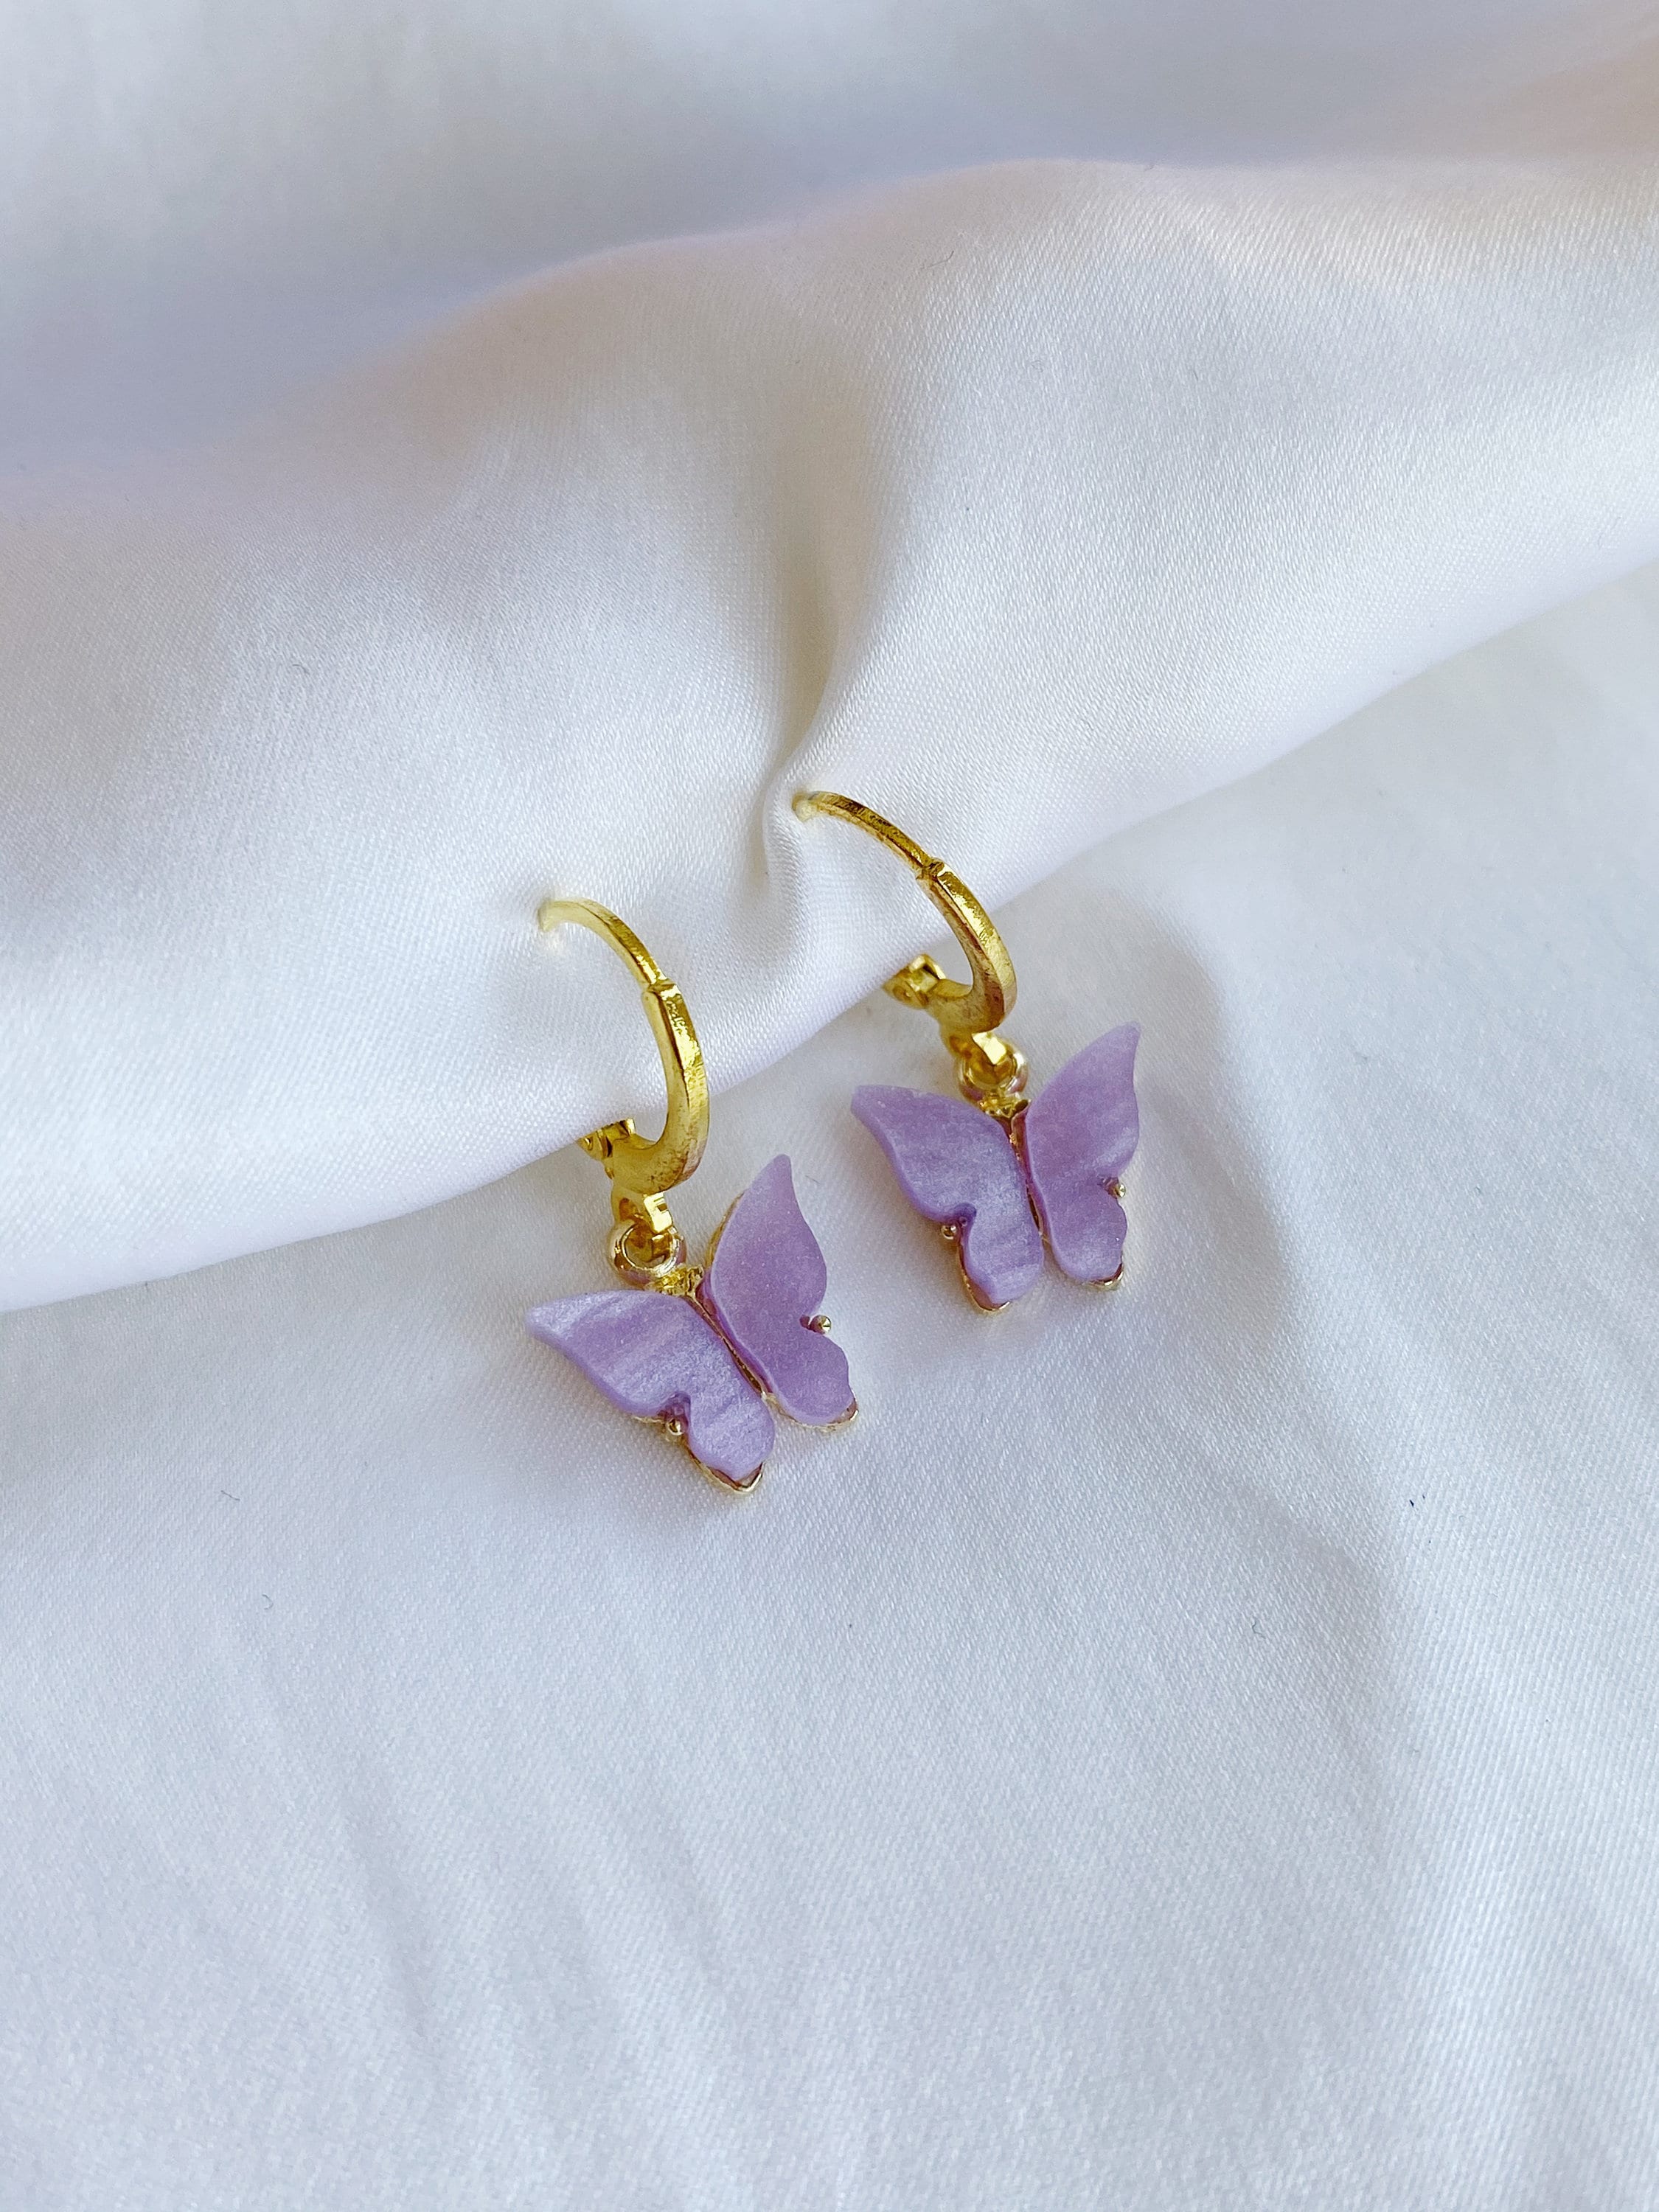 Purple butterfly with fringe earrings